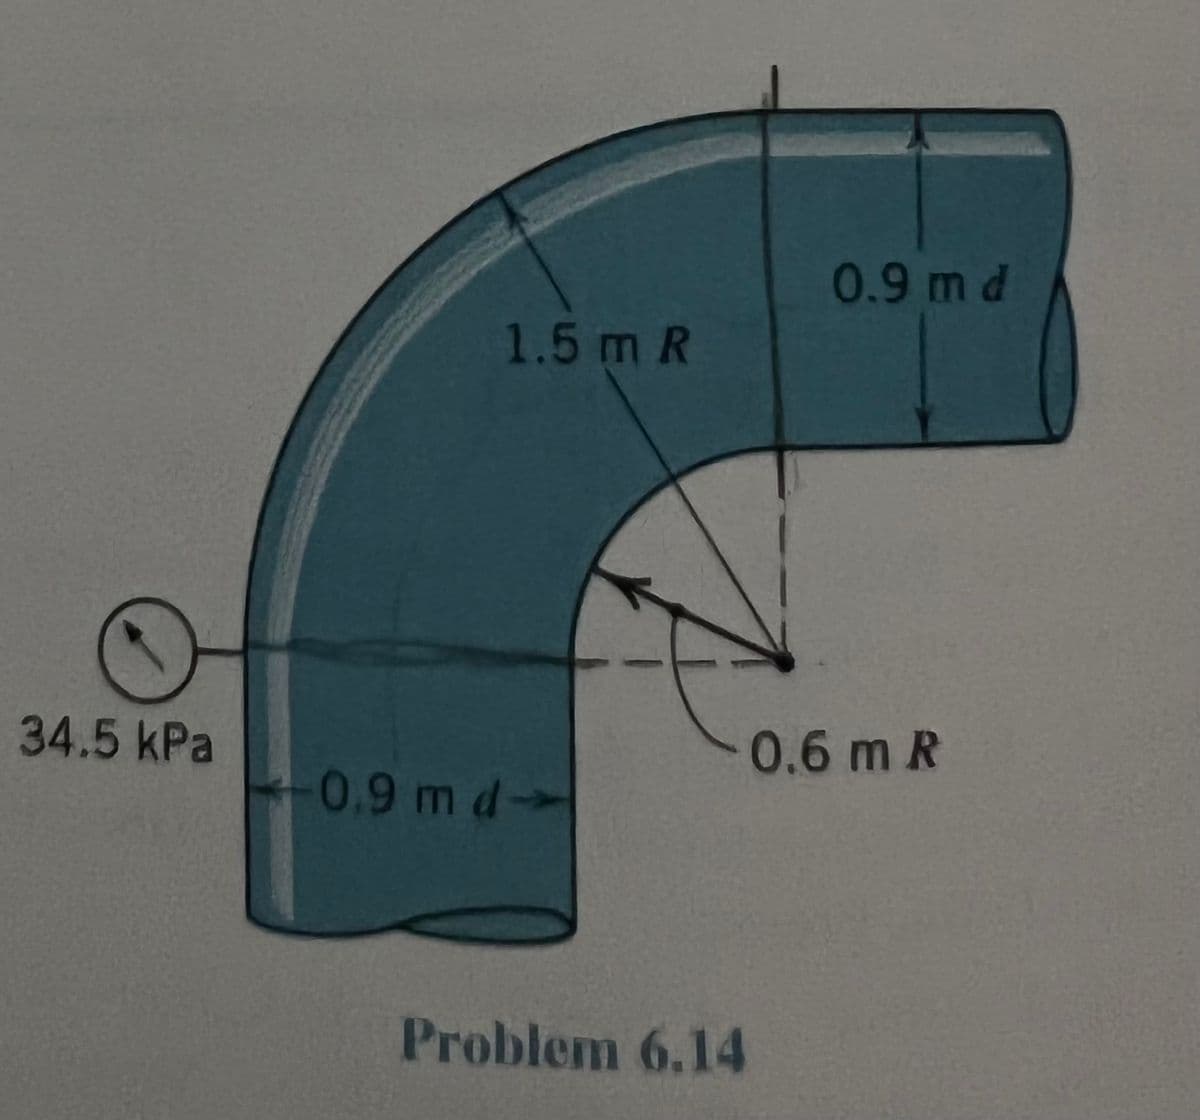 34.5 kPa
1.5 m R
0.9 m d-
0.9 m d
0.6 m R
Problem 6.14